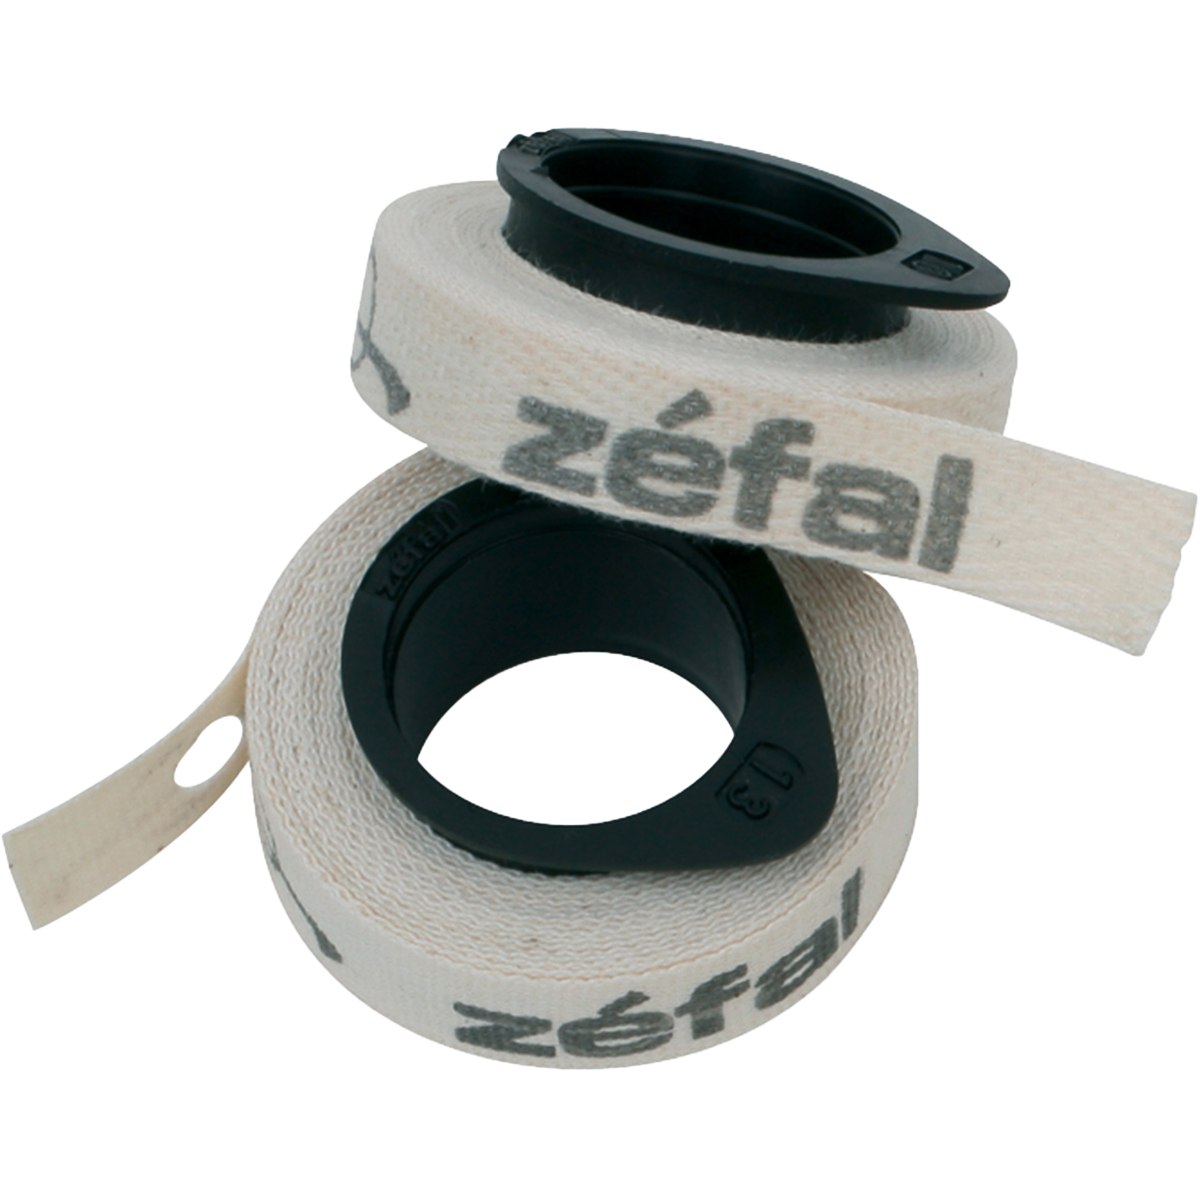 Produktbild von Zéfal Cotton Tapes Pannenschutz-Felgenband - 2 Stk.